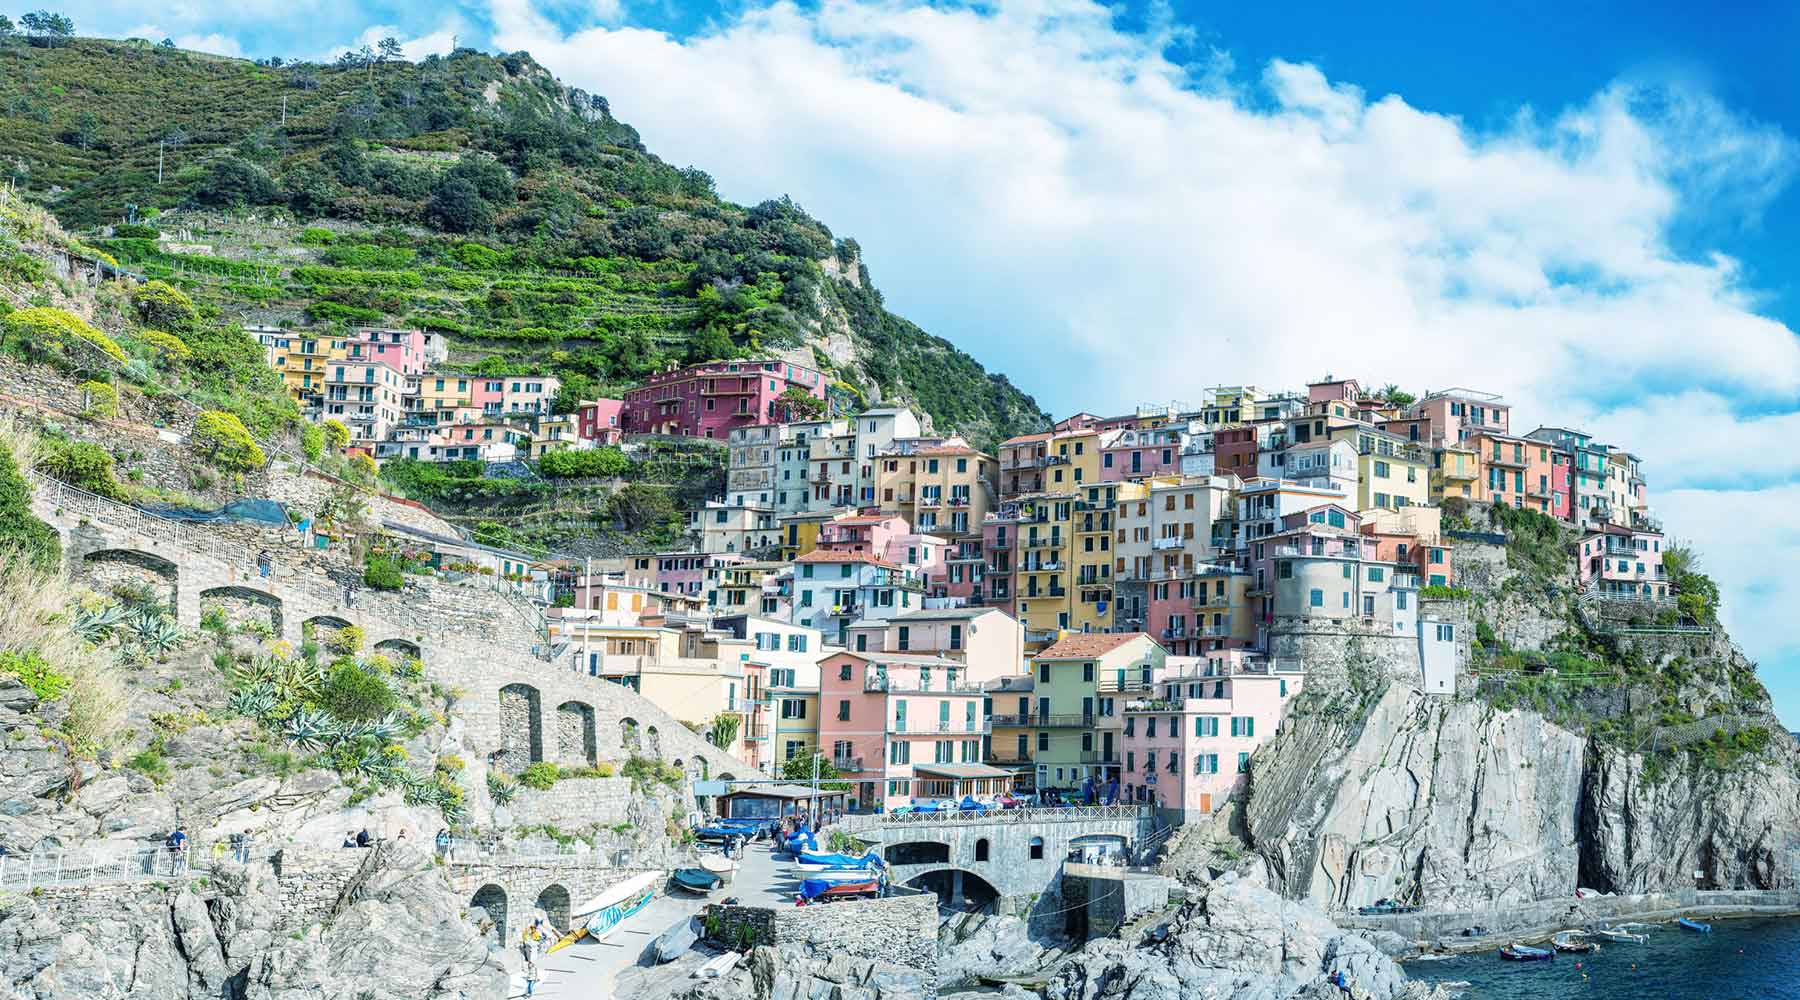 The Cinque Terre and Sanremo